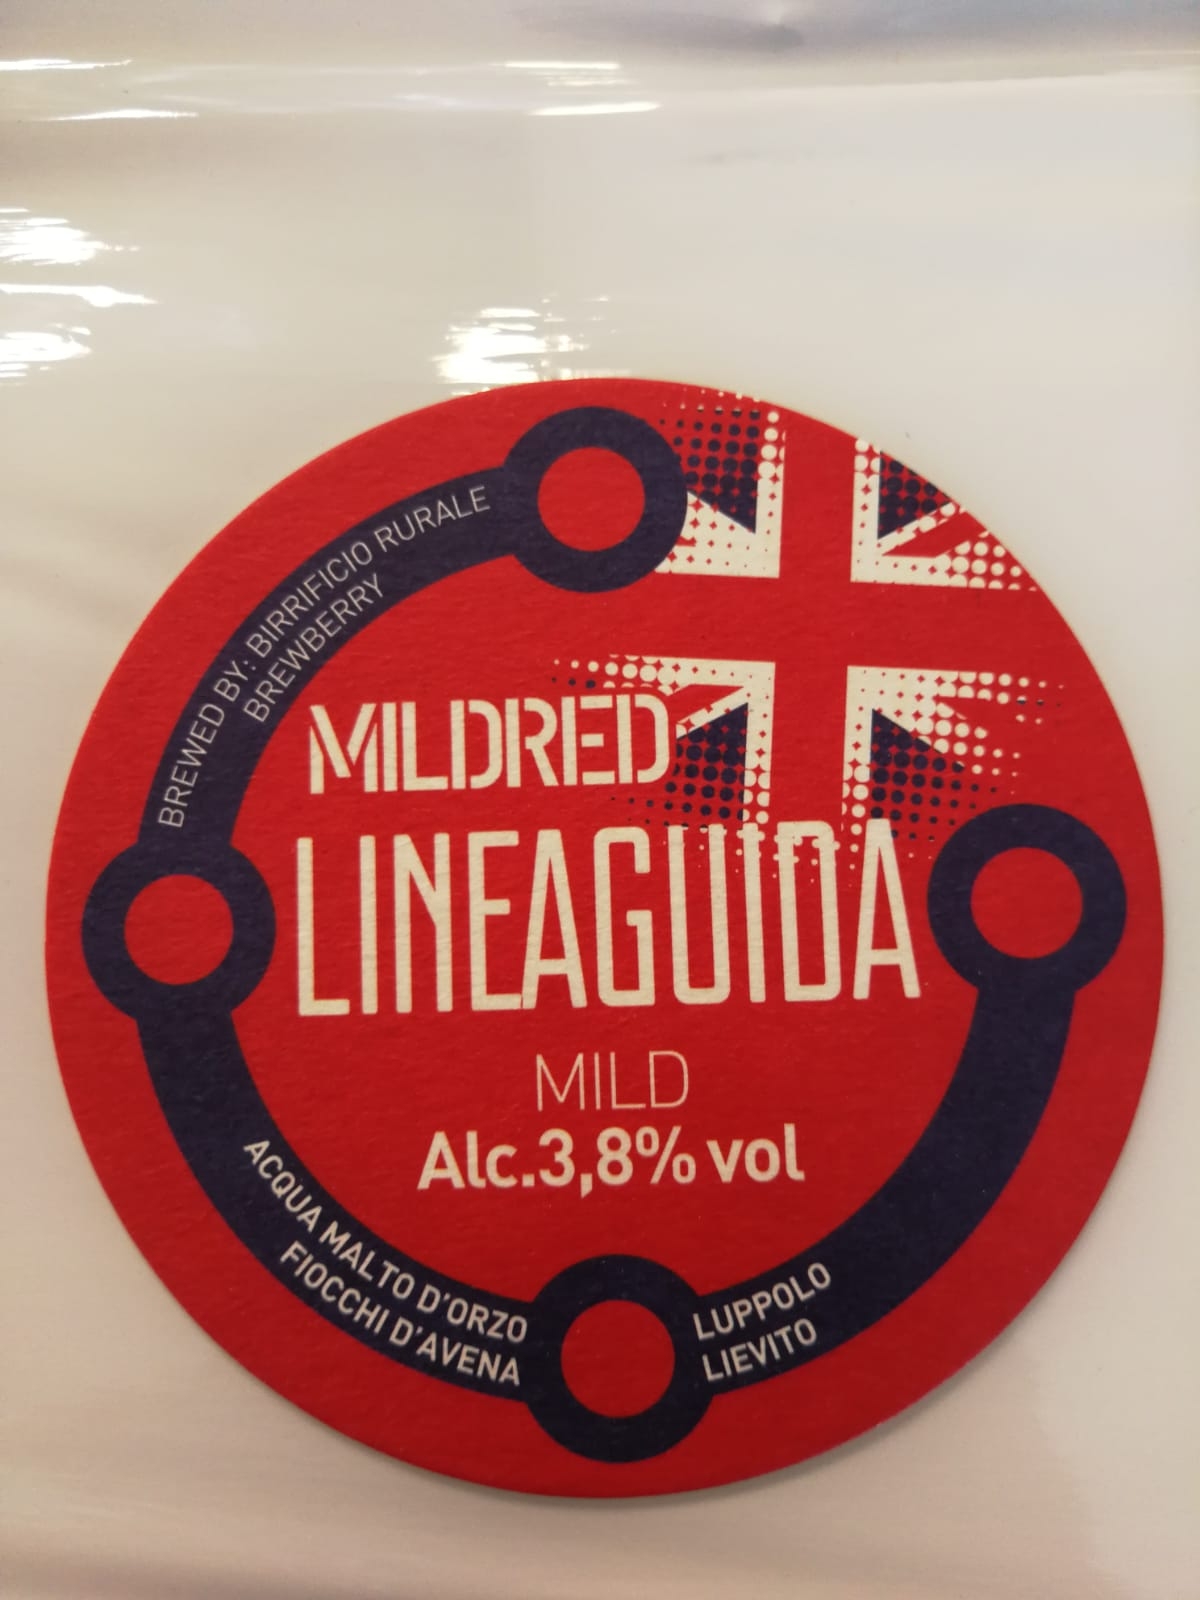 Una Nuova Birra per Lineaguida: il 3 ottobre arriva Mildred!